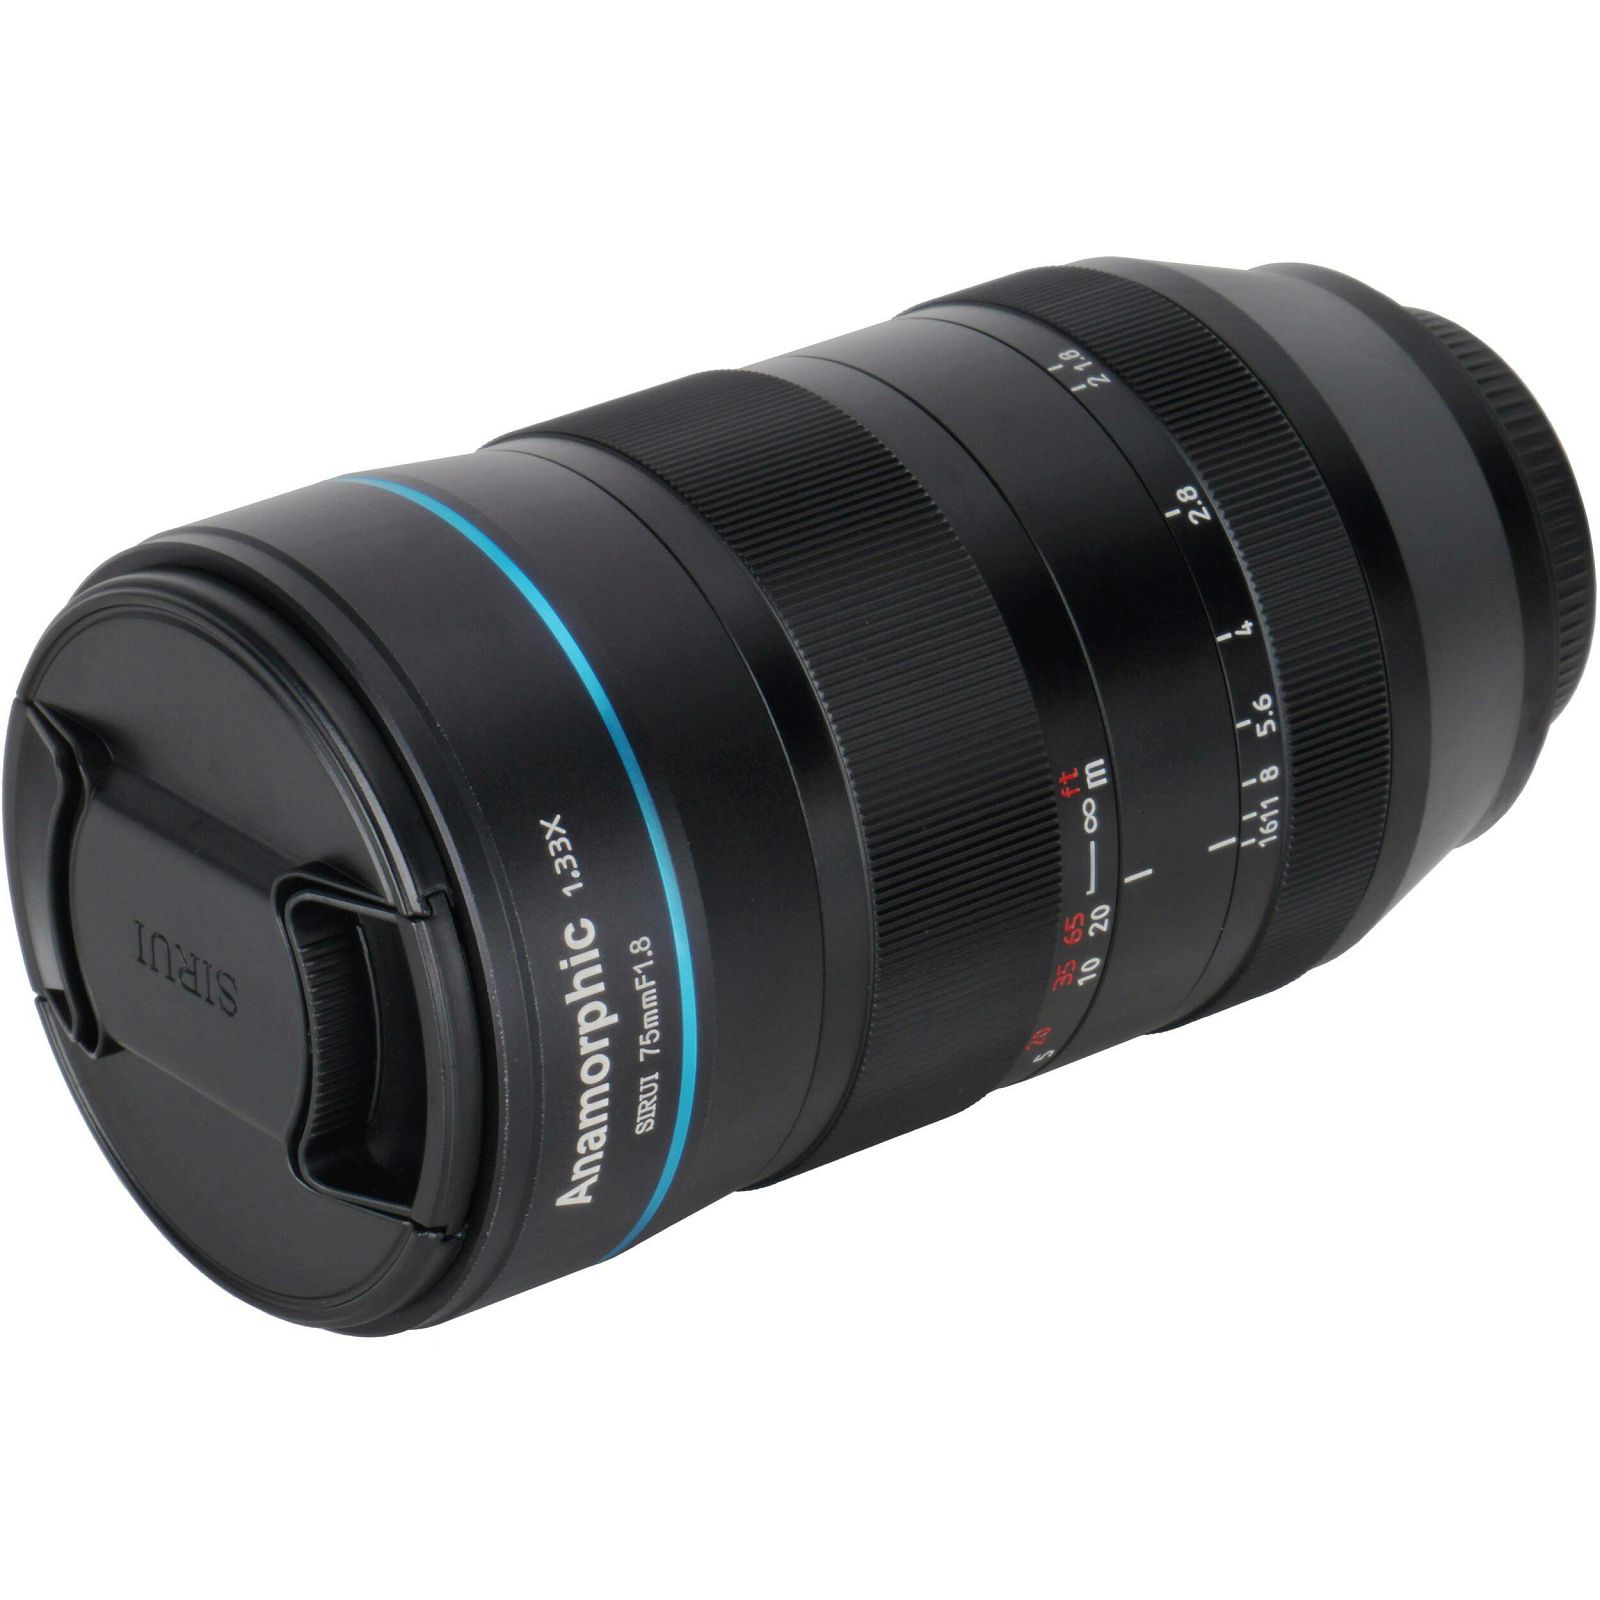 Sirui 75mm f/1.8 1.33x Anamorphic lens objektiv za Fujifilm X (SR75-X)